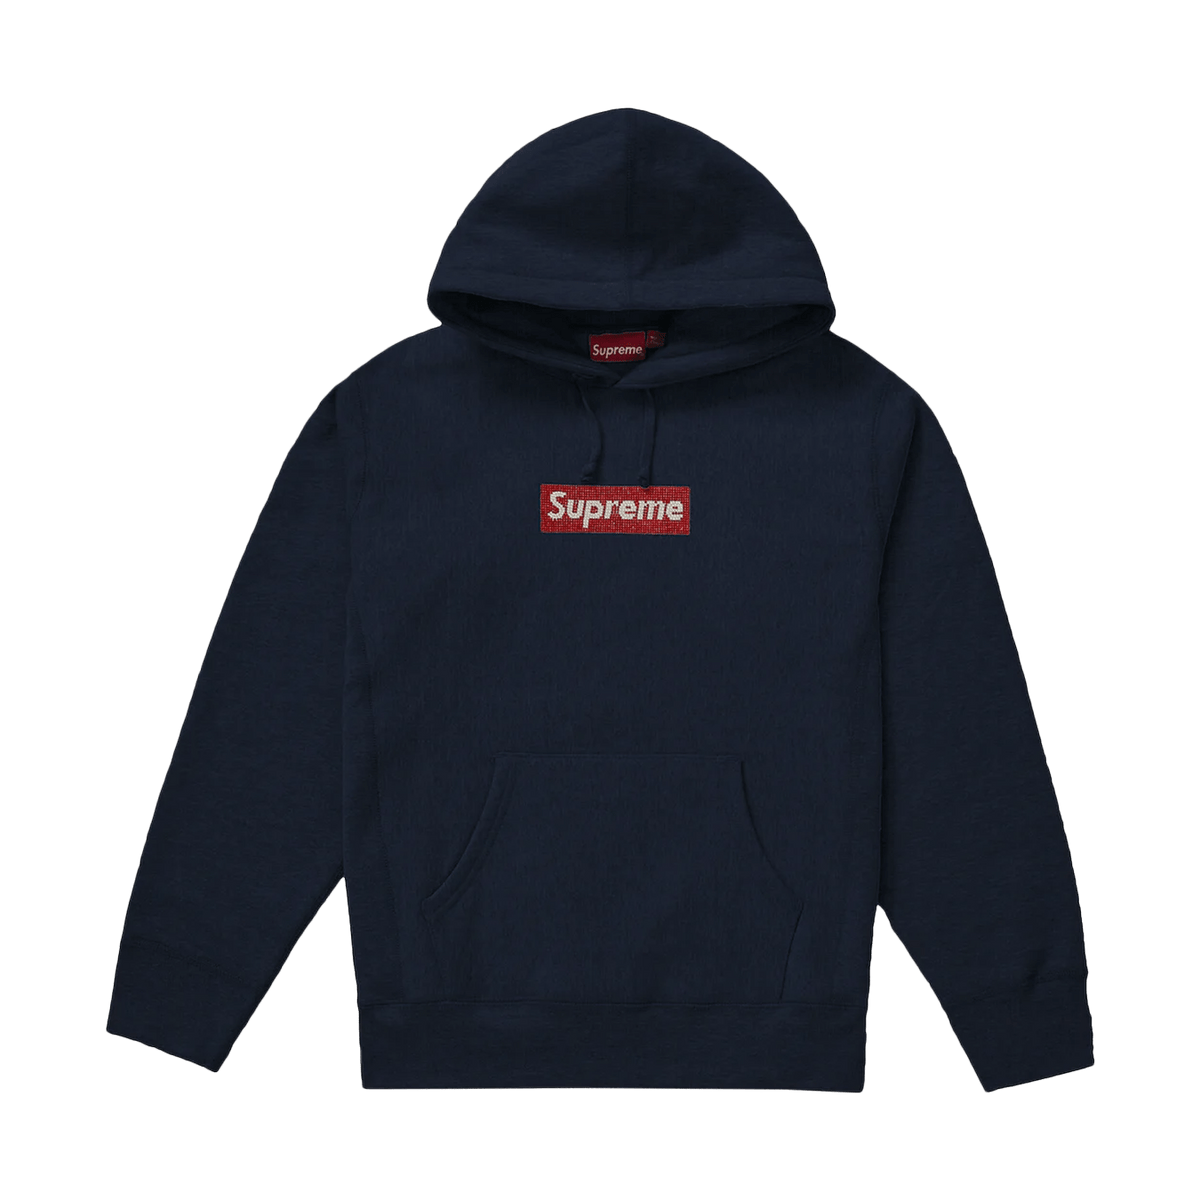 Supreme x Swarovski Box Logo Hooded Sweatshirt 'Navy' - JuzsportsShops